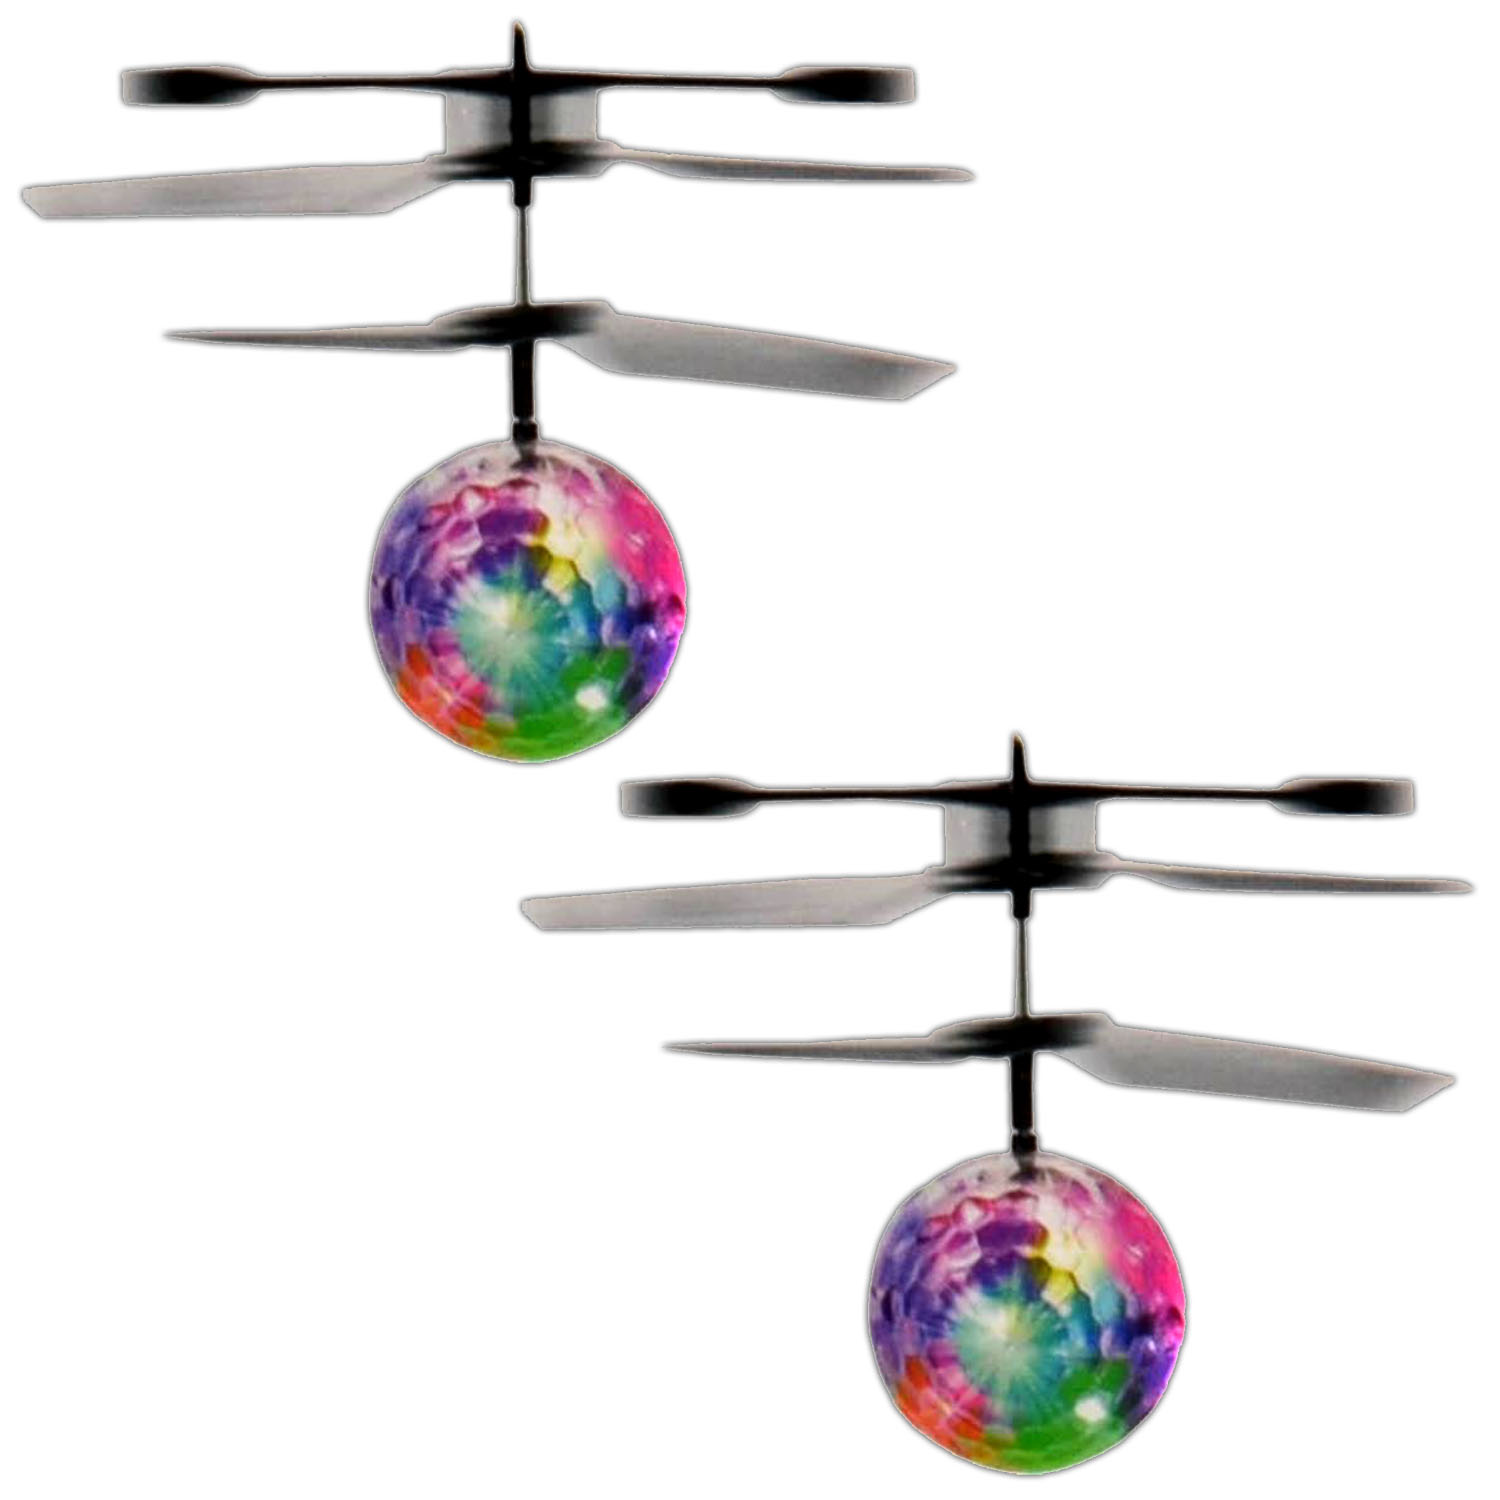 Fliegende Kugel-Infrarot-Induktions-bunte LED-Disco RC Hubschrauber-Spielzeug 